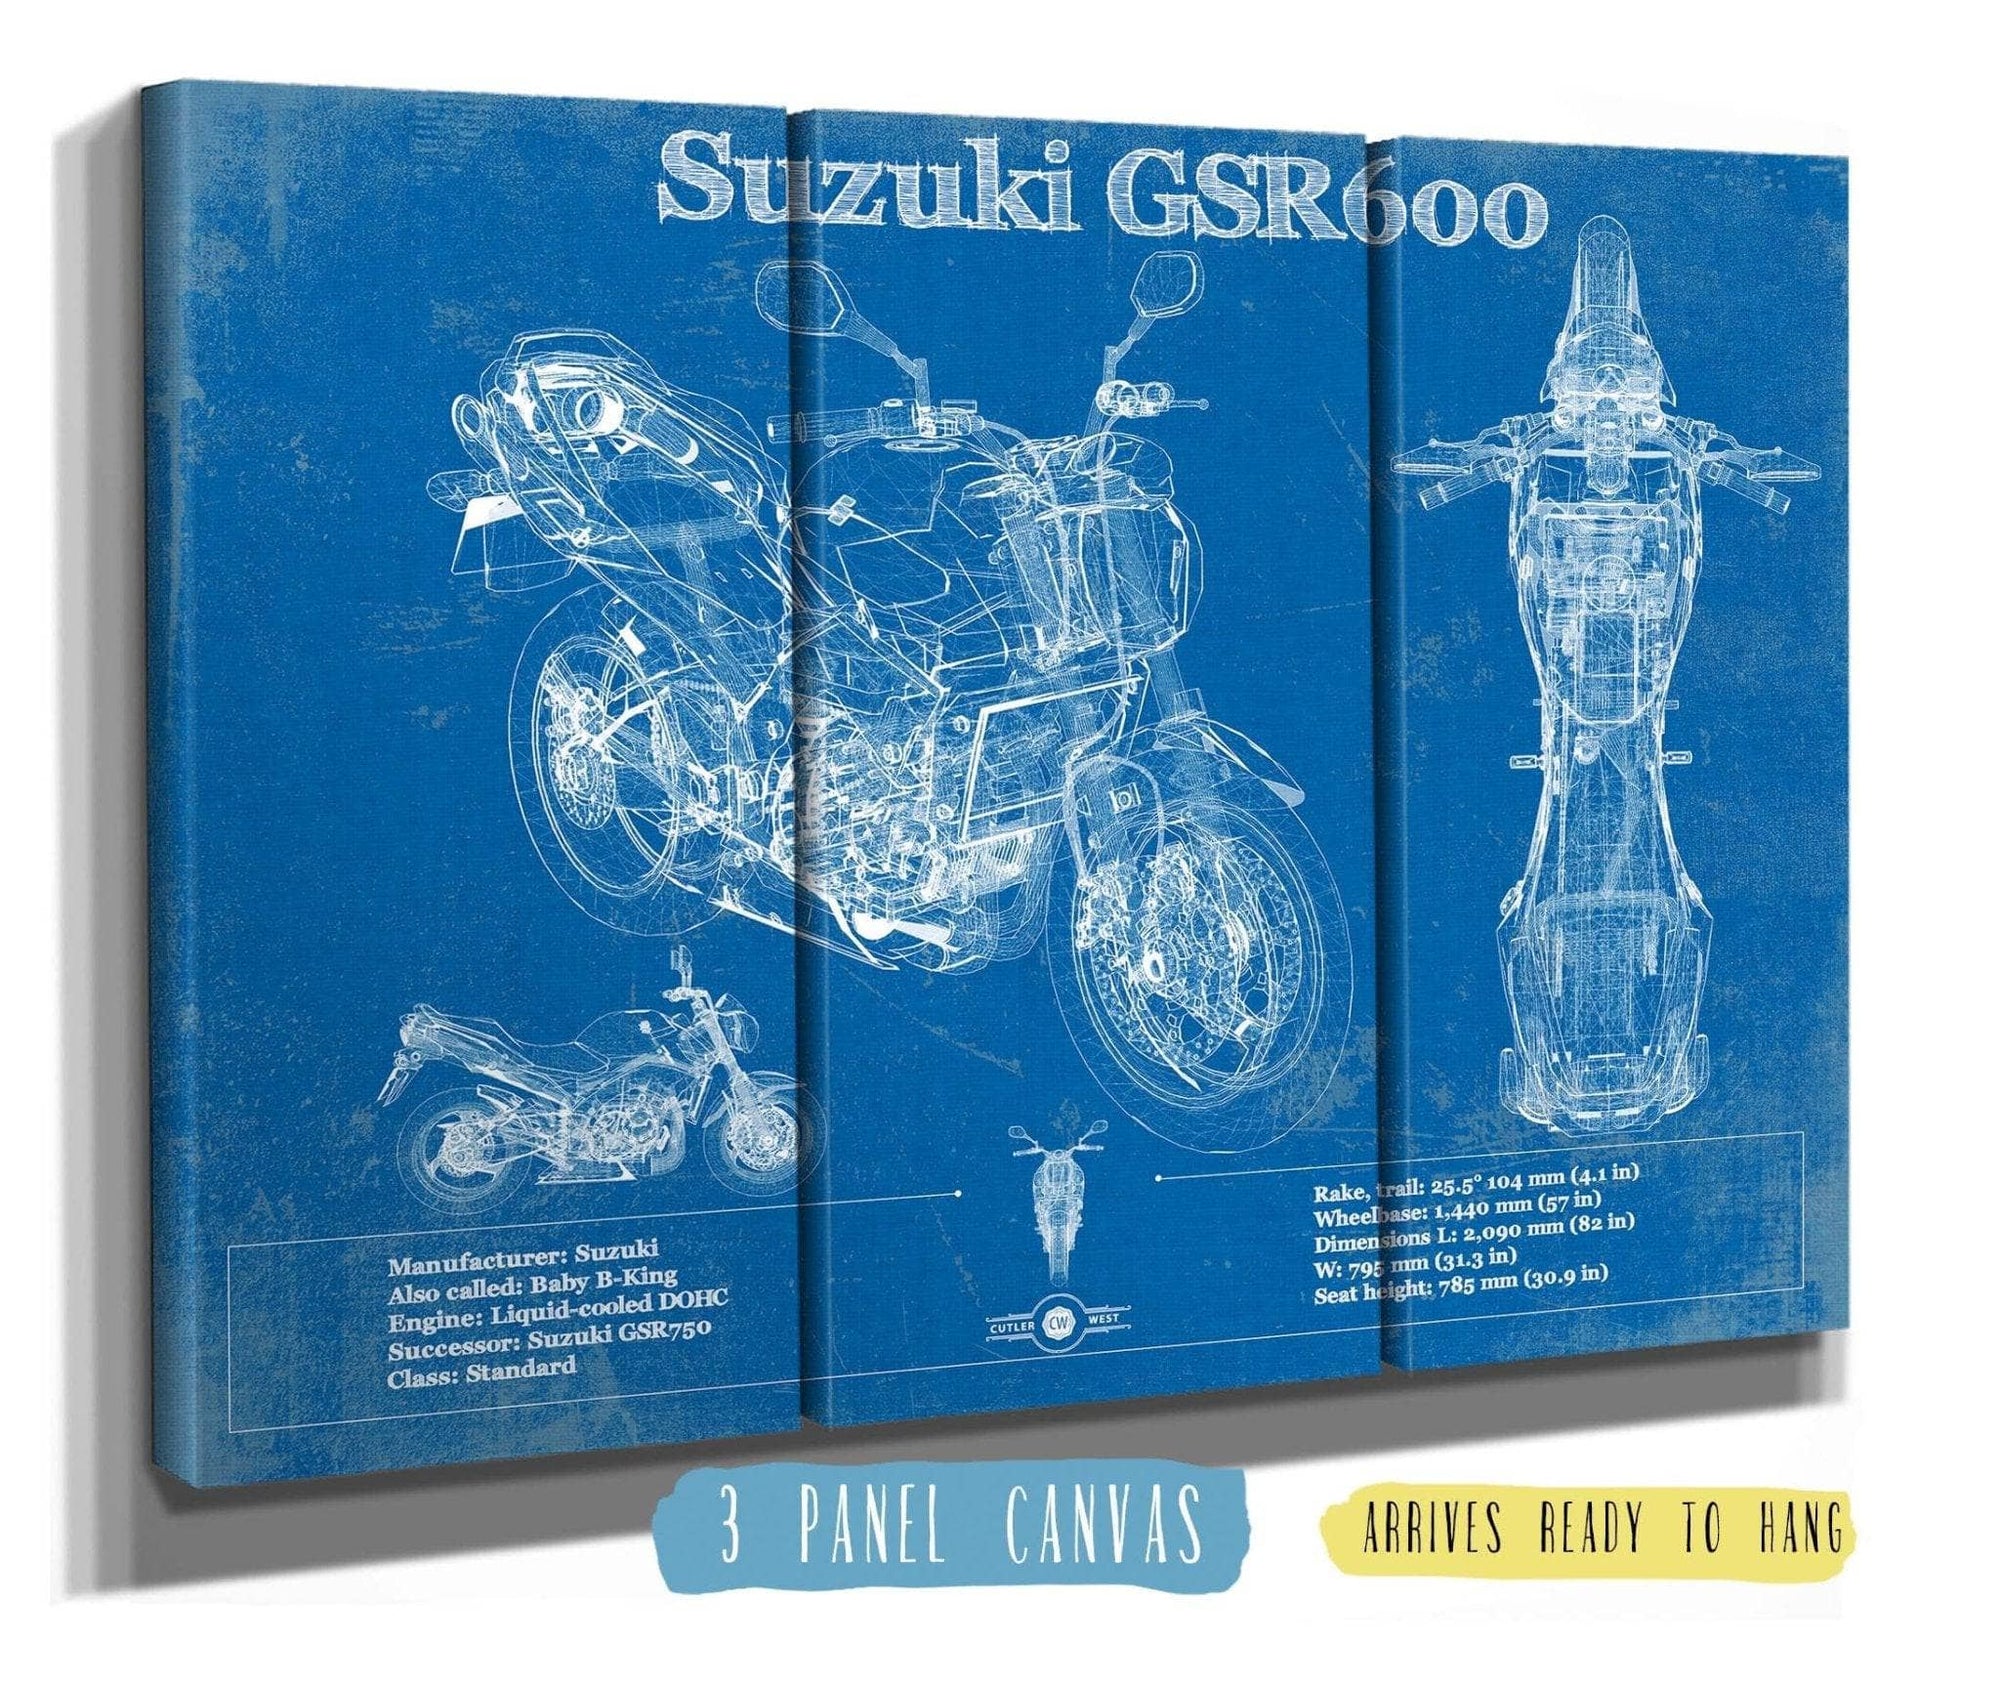 Cutler West 48" x 32" / 3 Panel Canvas Wrap Suzuki GSR600 Blueprint Motorcycle Patent Print 845000333_28130